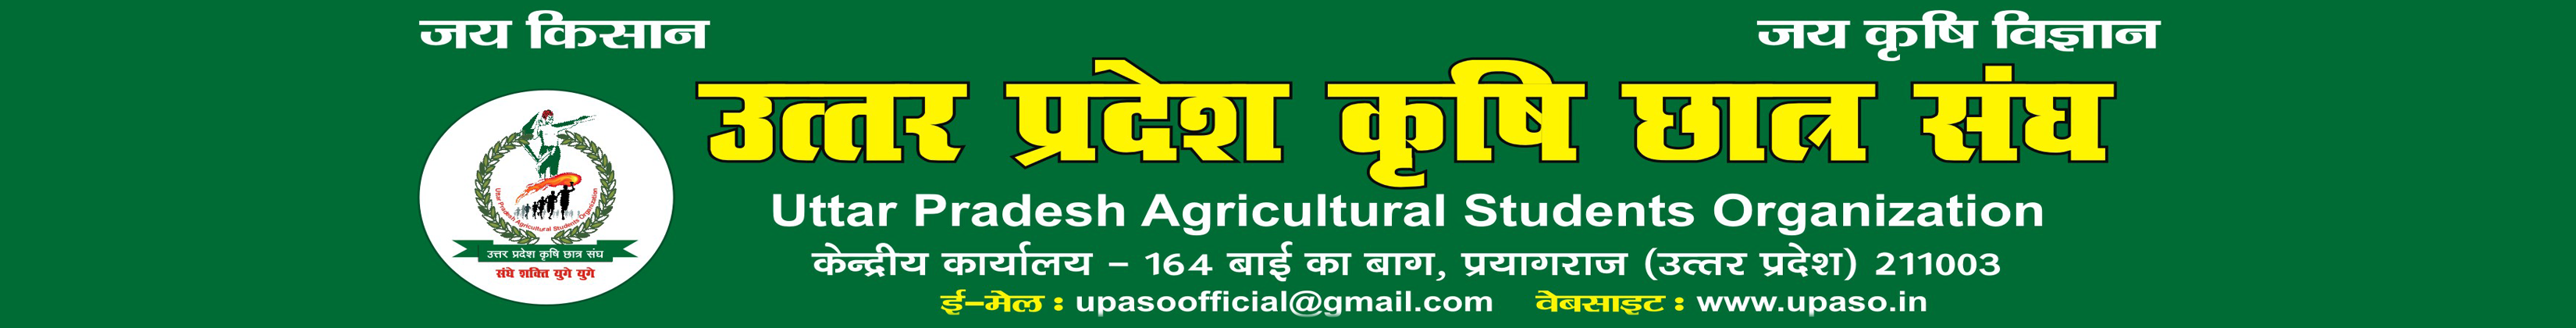 UPASO - Uttar Pradesh Agricultural Students Organisation